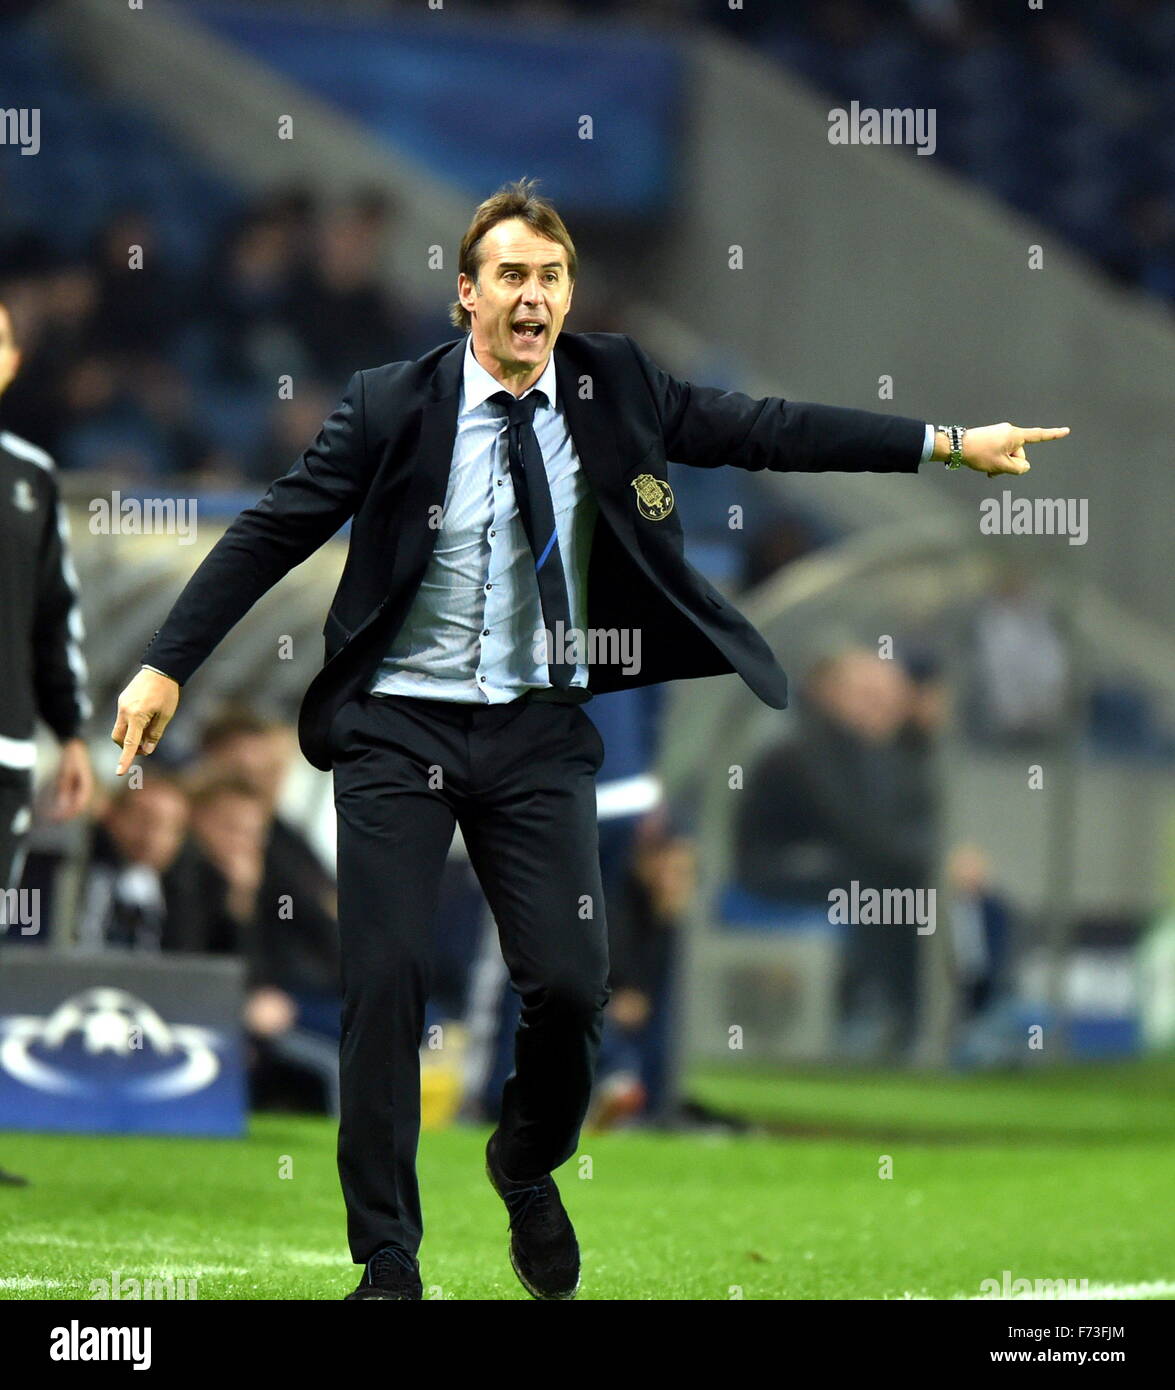 Porto, Portugal. 24 Nov, 2015. Lopetegui, head coach de reacciona durante la final de la UEFA Champions League Grupo G del partido de fútbol entre Porto y Dinamo de Kiev